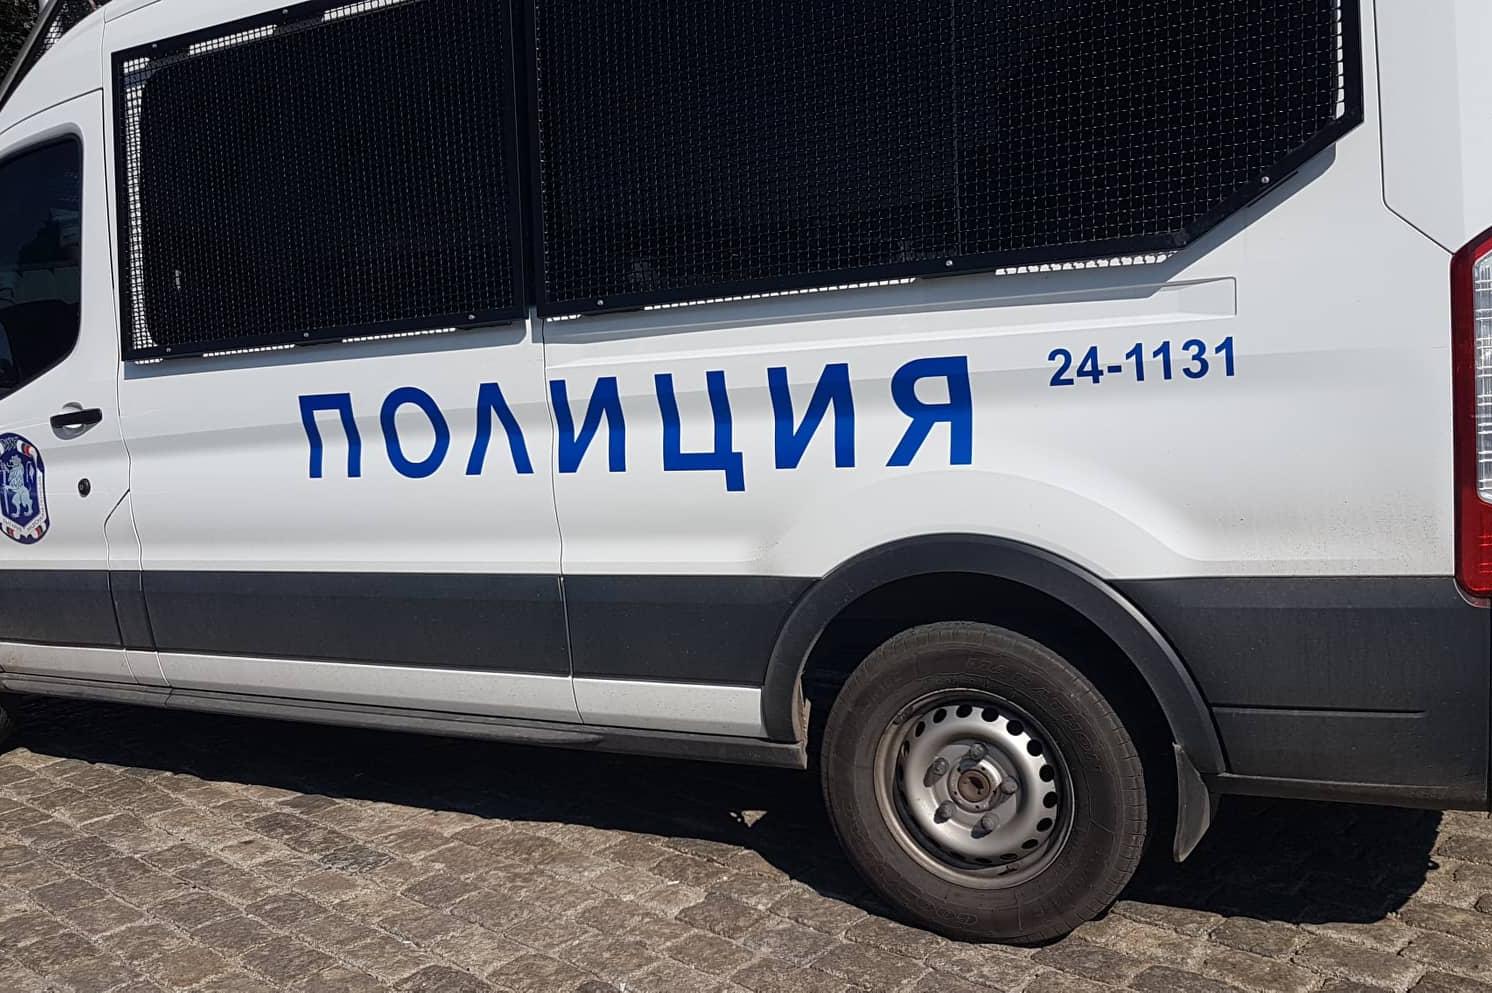 Ботевградски полицаи задържаха шофьор с общо 100 стека контрабандни цигари